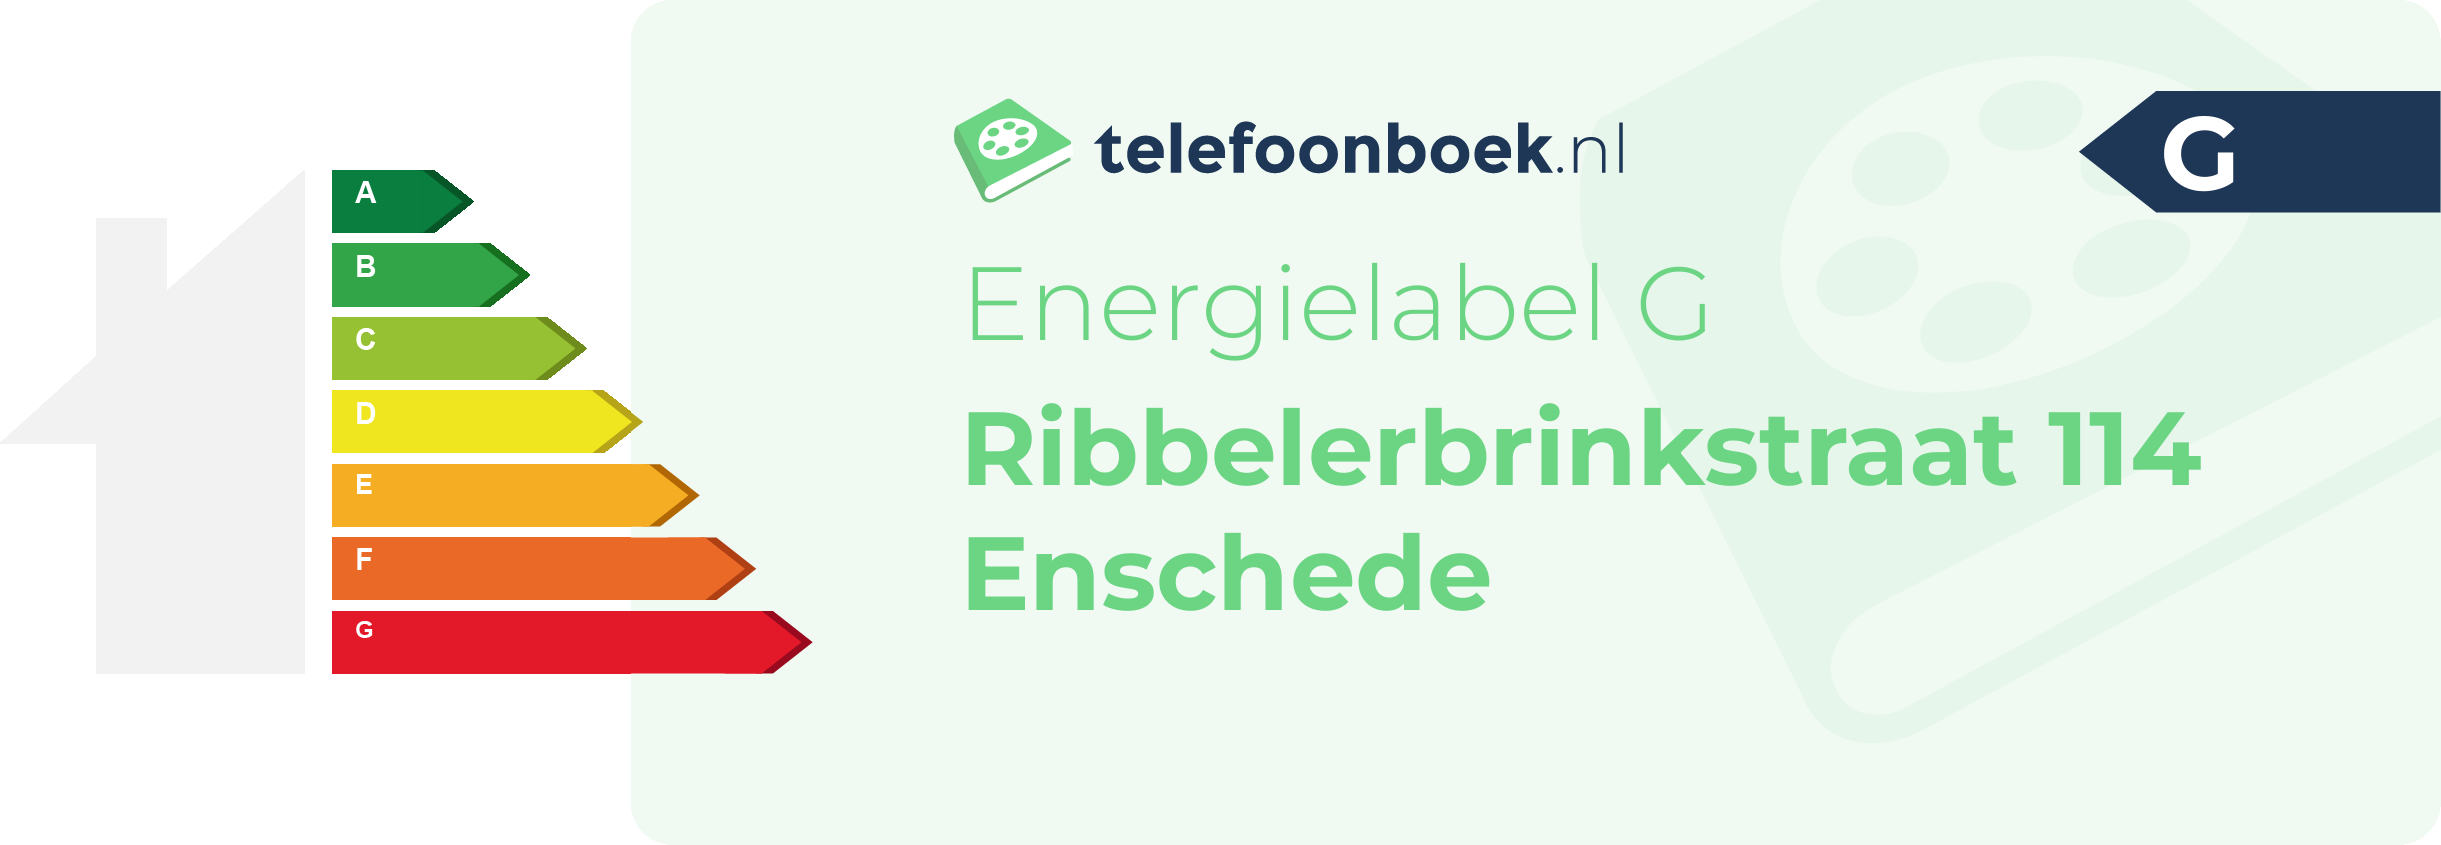 Energielabel Ribbelerbrinkstraat 114 Enschede